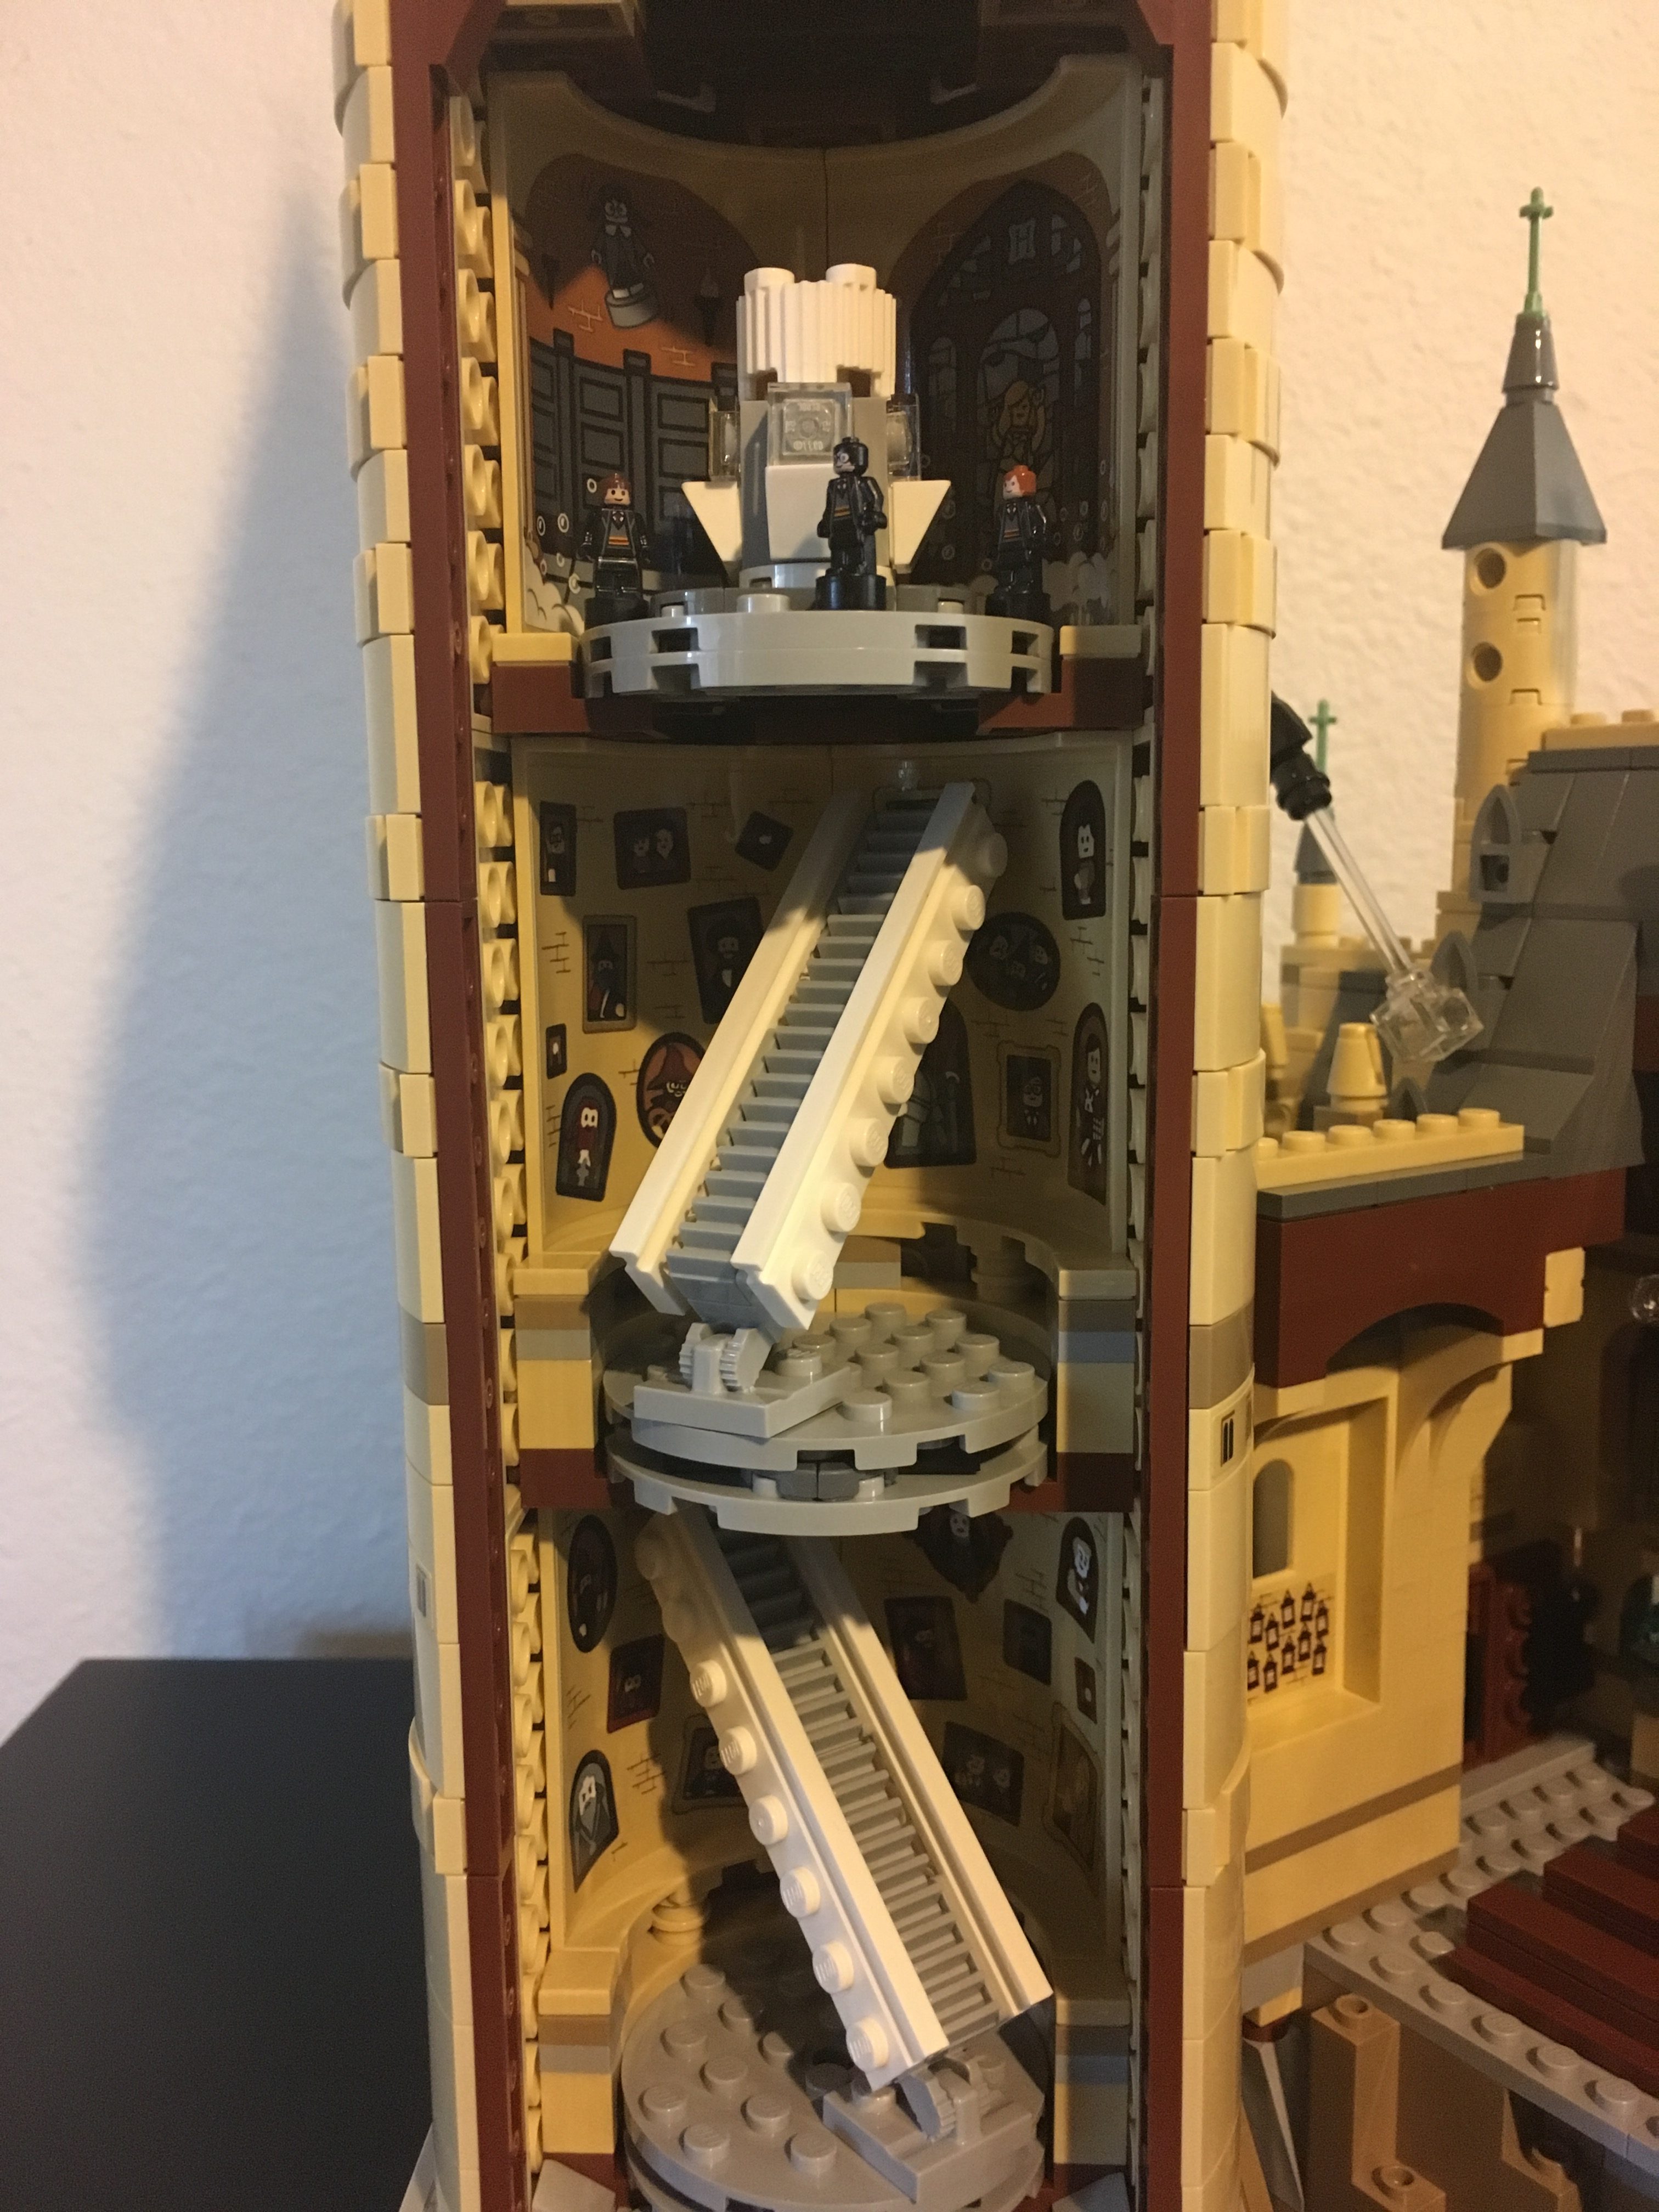 Lego Hogwarts Castle - Second Biggest set Ever 6020 - Harry Potter 71043 -  Lego Speed Build 